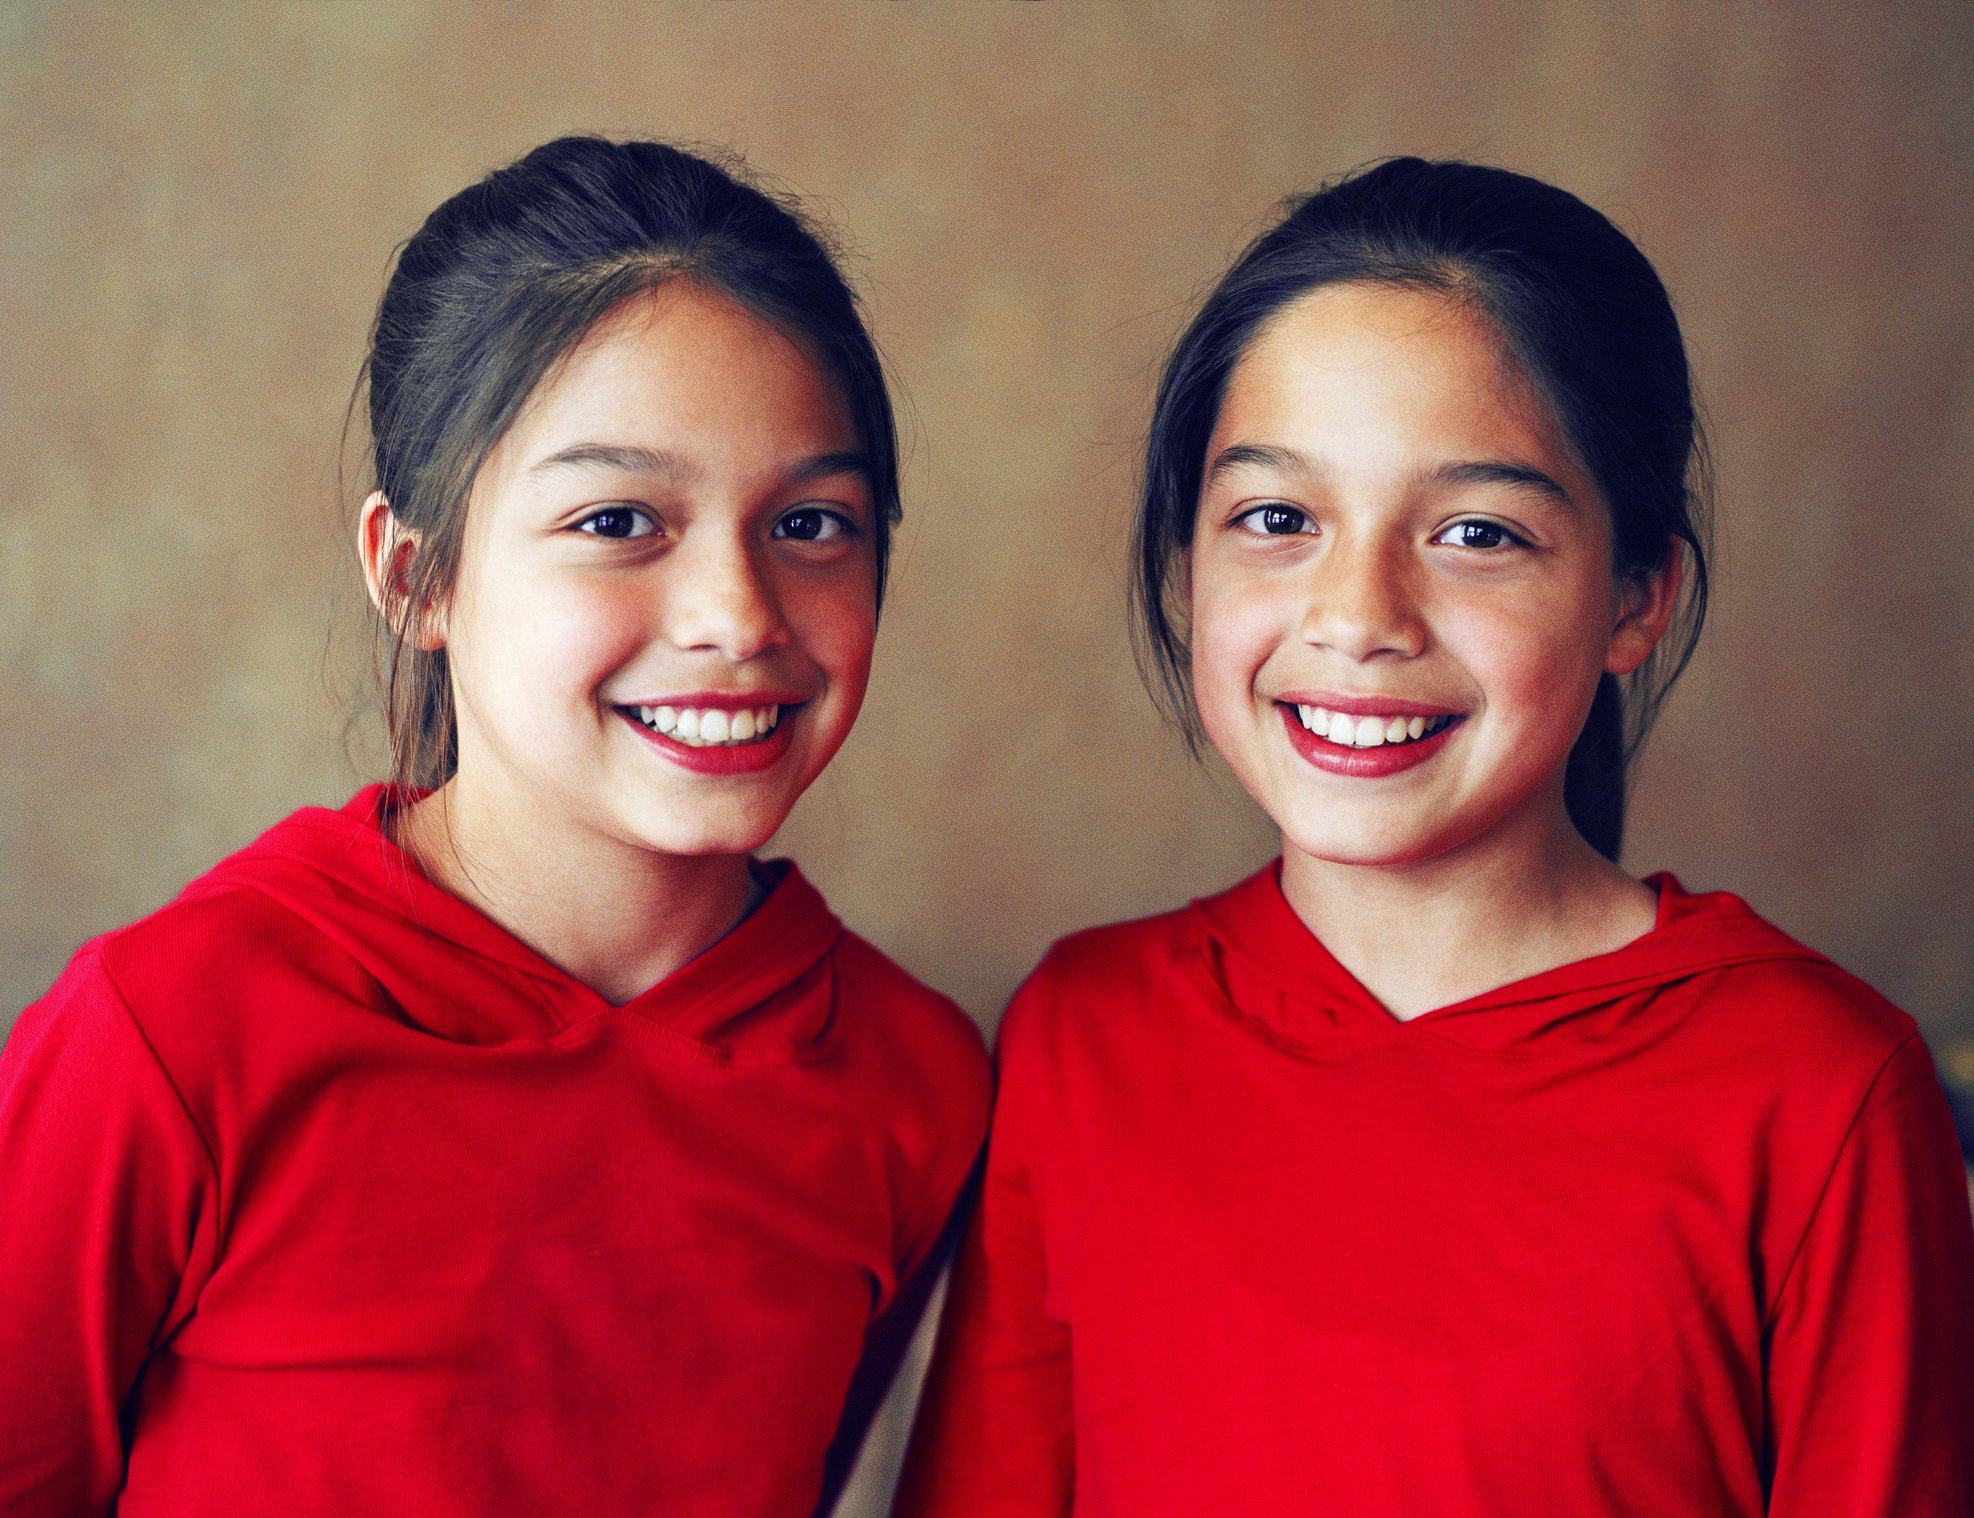 Zwillingsmädchen lächeln, während sie für ein Foto posieren. | Quelle: Getty Images